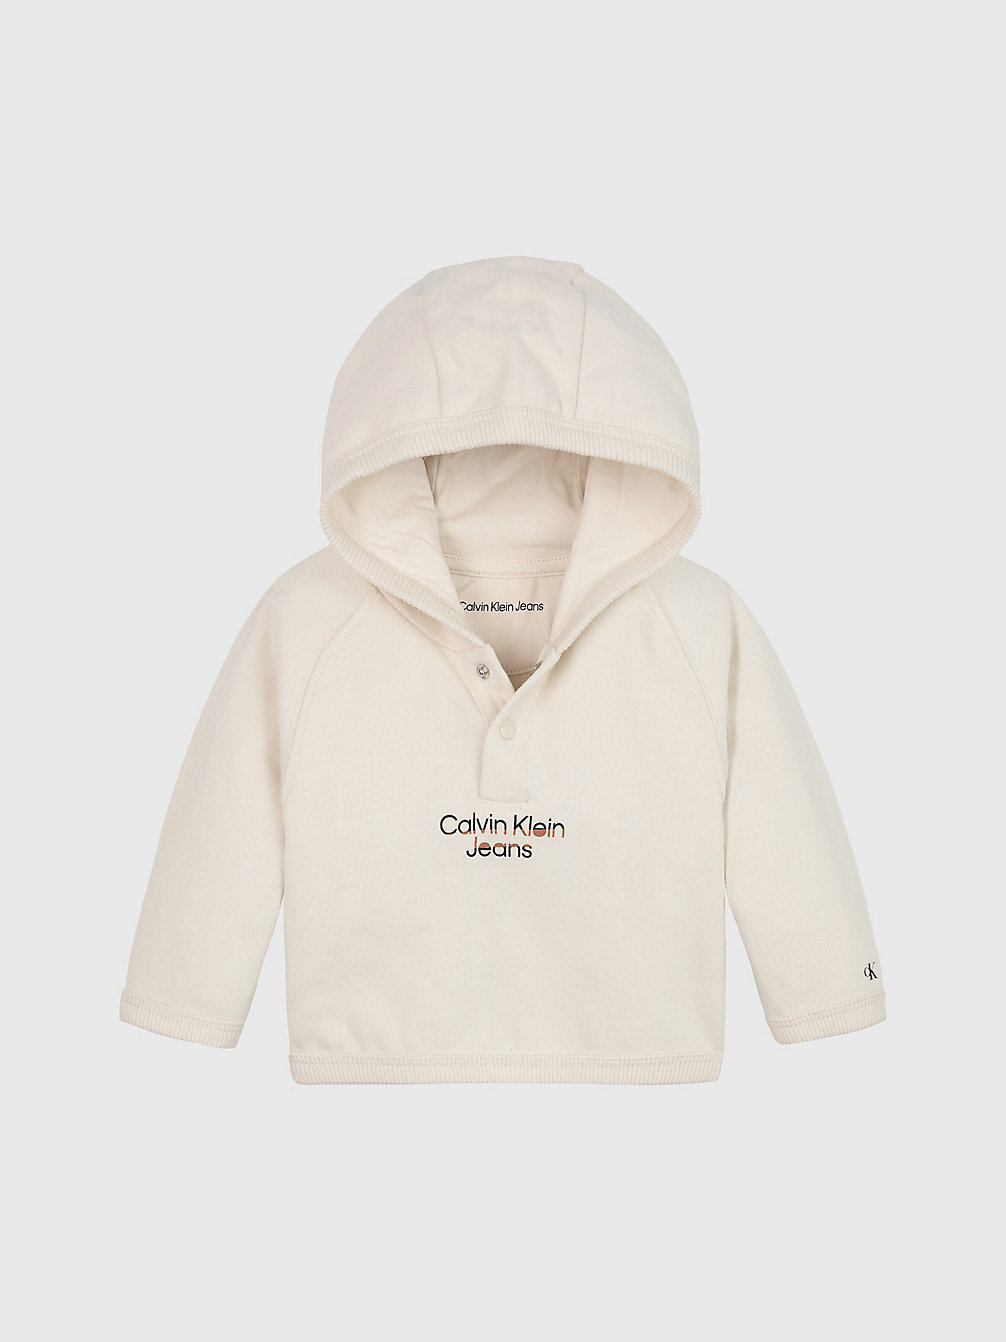 WHITECAP GRAY Fleece Newborn-Hoodie Met Logo undefined newborn Calvin Klein